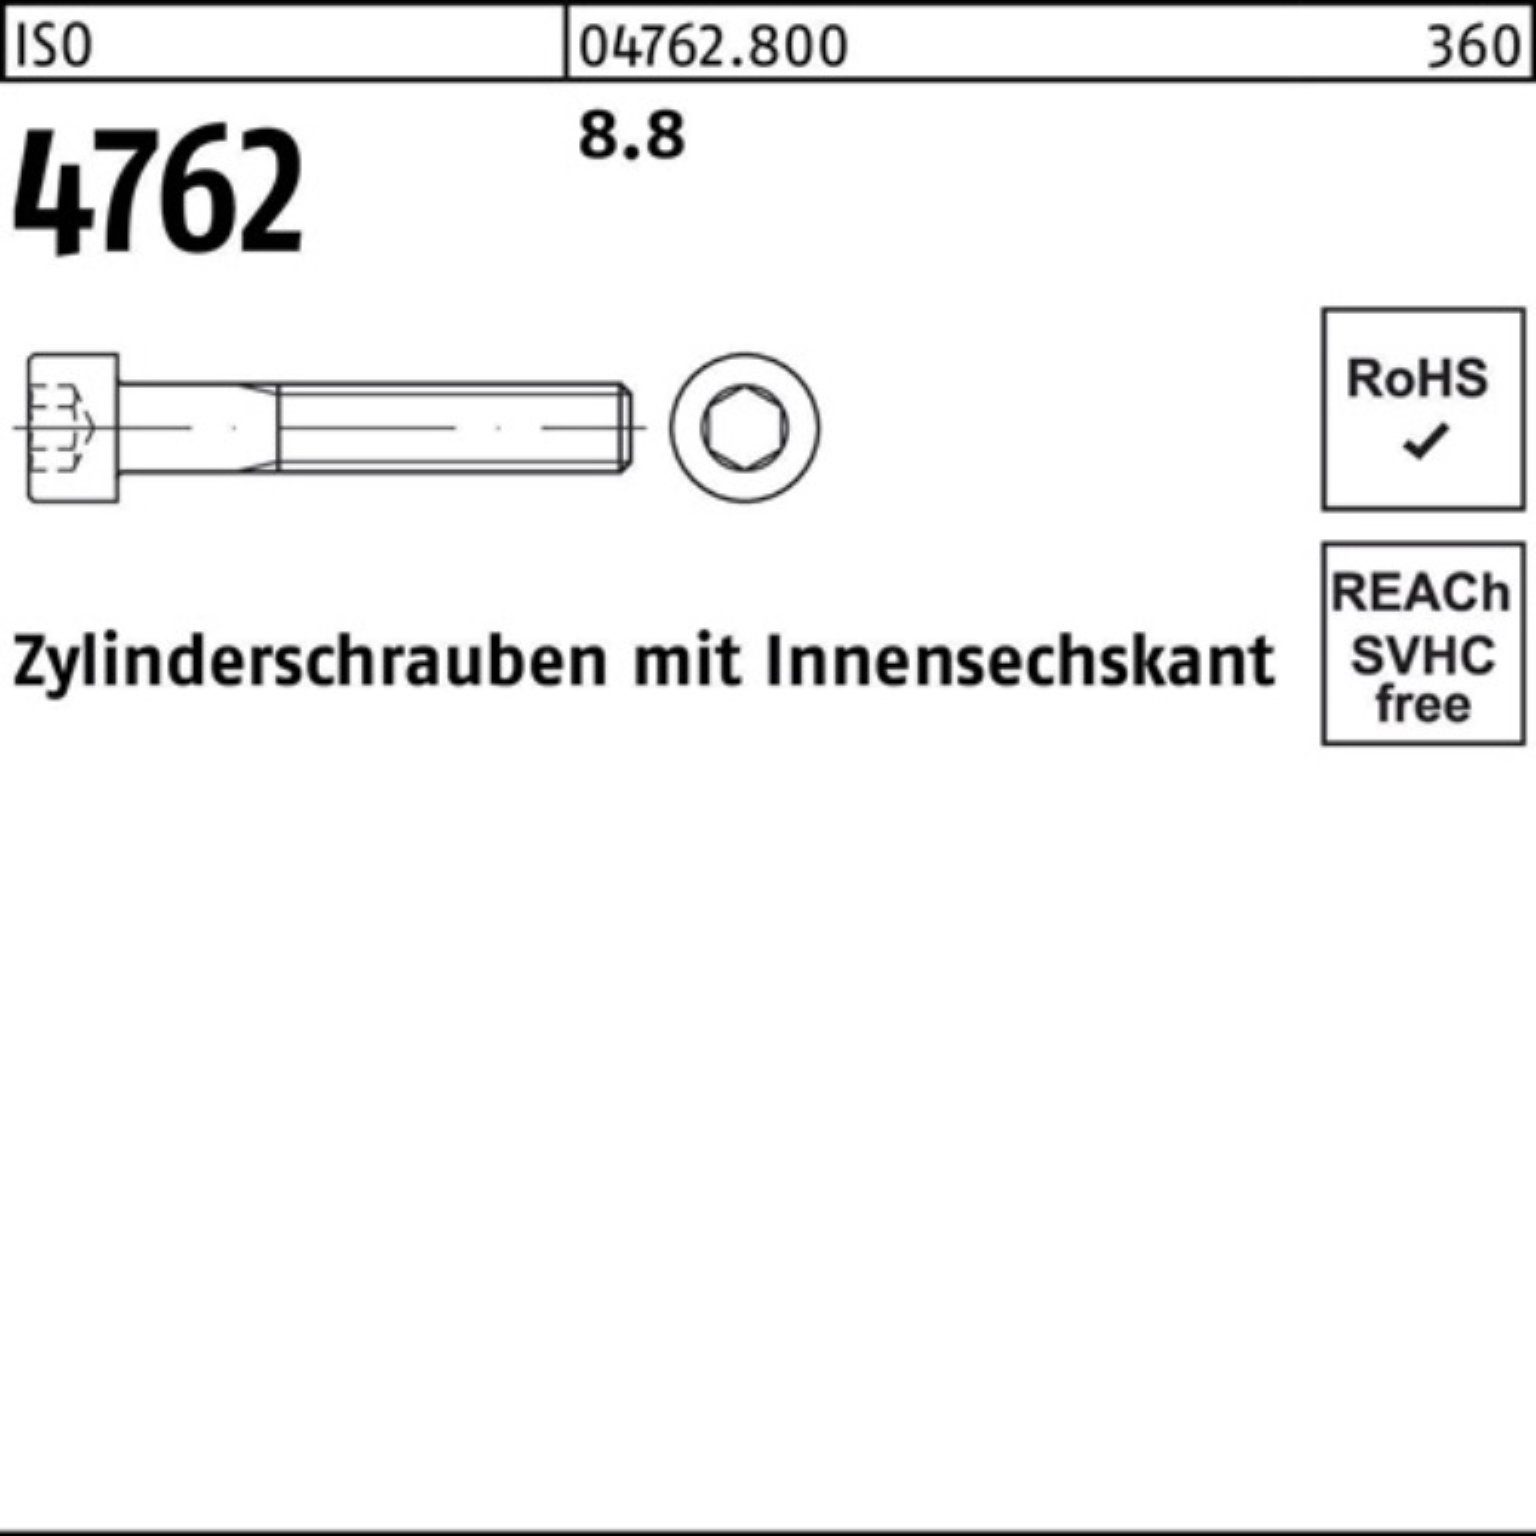 Pack Zylinderschraube Zylinderschraube Stück ISO Reyher I M56x 100er 8.8 1 220 Innen-6kt 4762